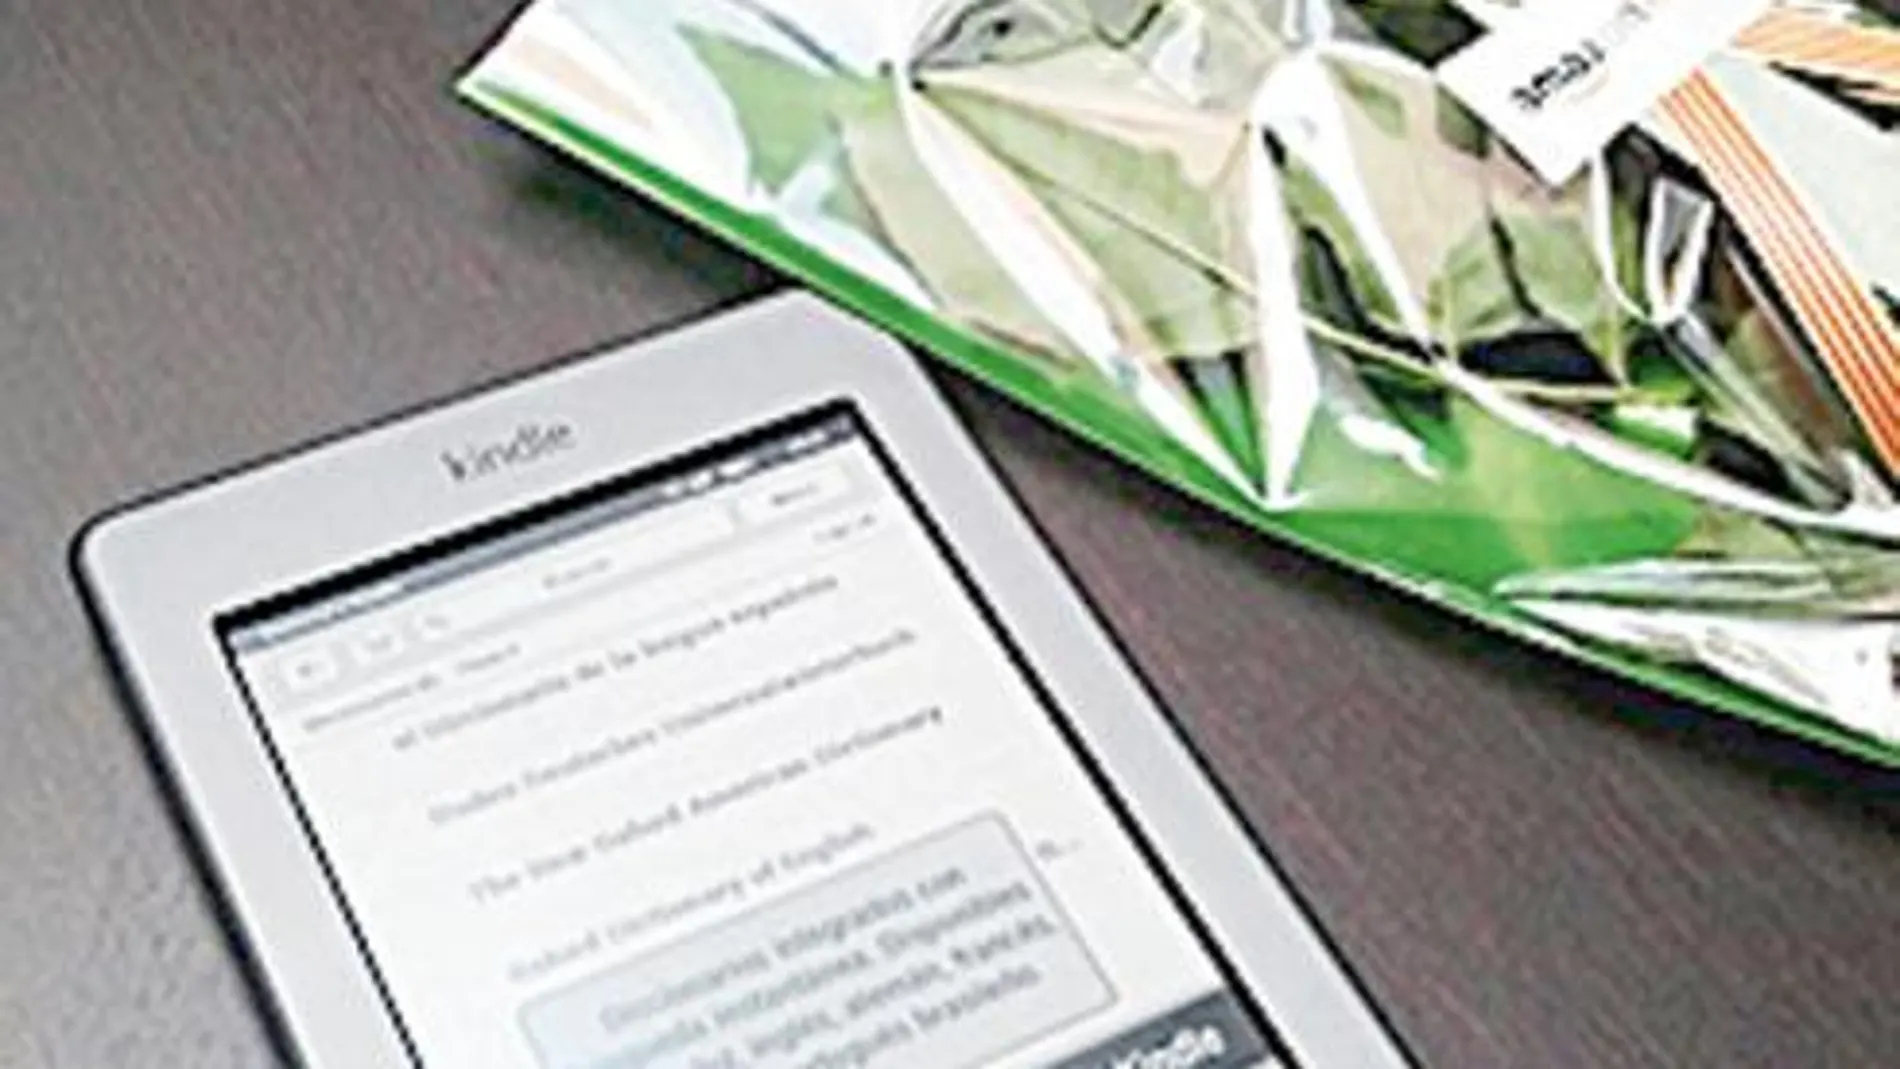 Los nuevos Kindle Touch salen al mercado